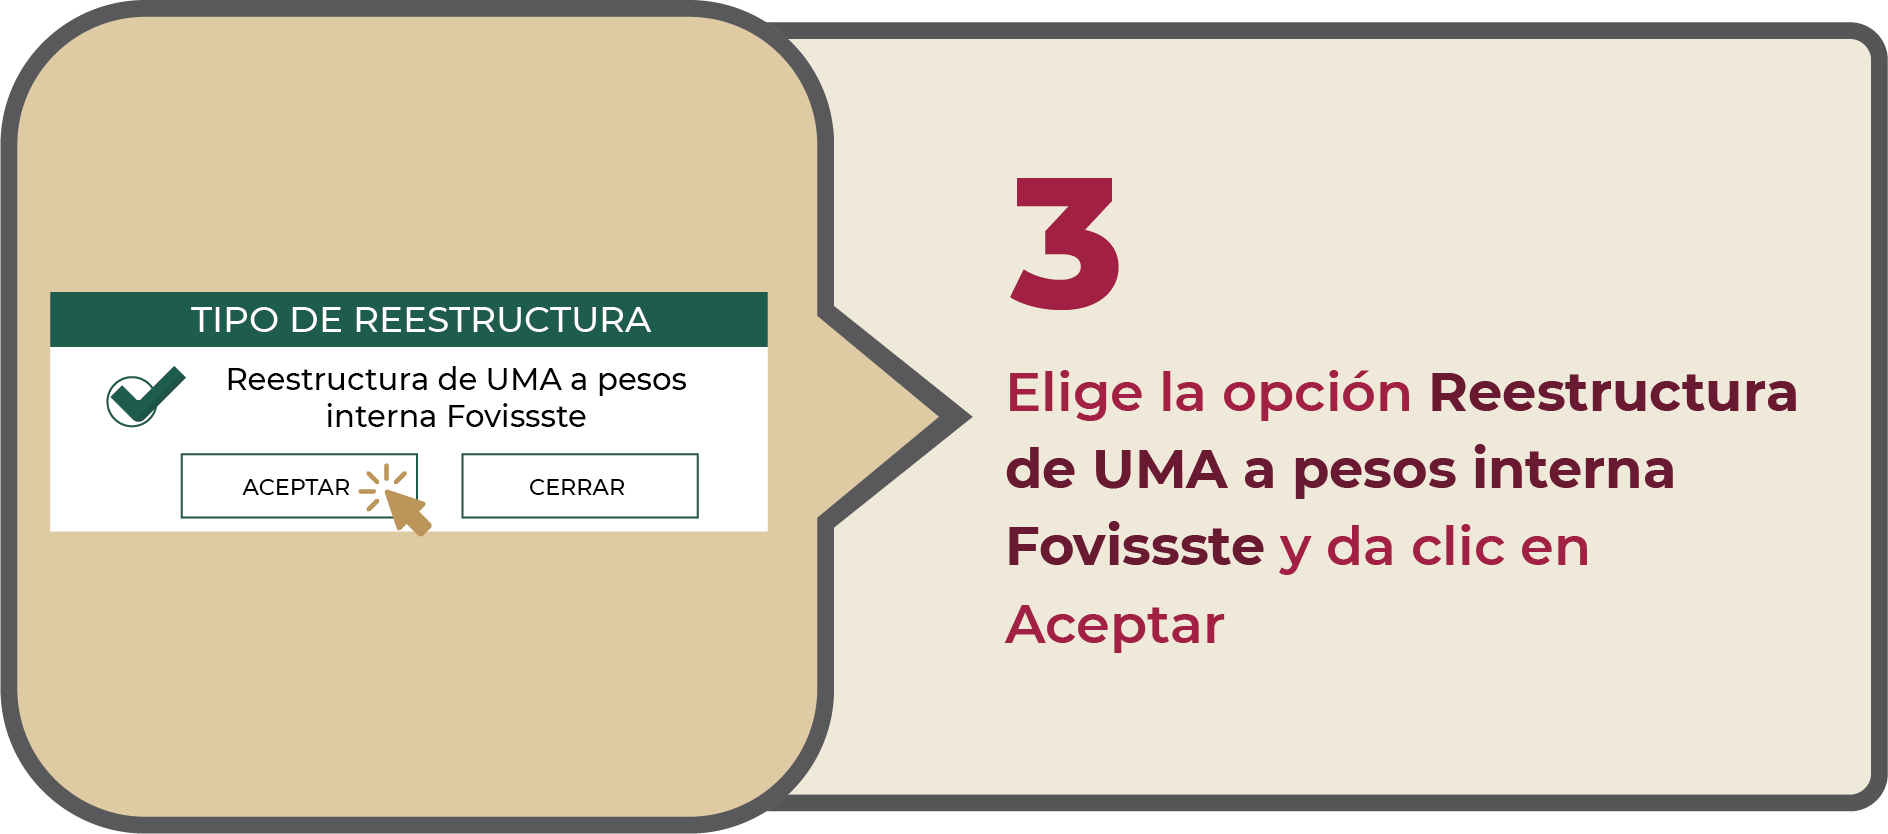 3 Elige la opción Reestructura de UMA a pesos interna Fovissste y da clic en Aceptar